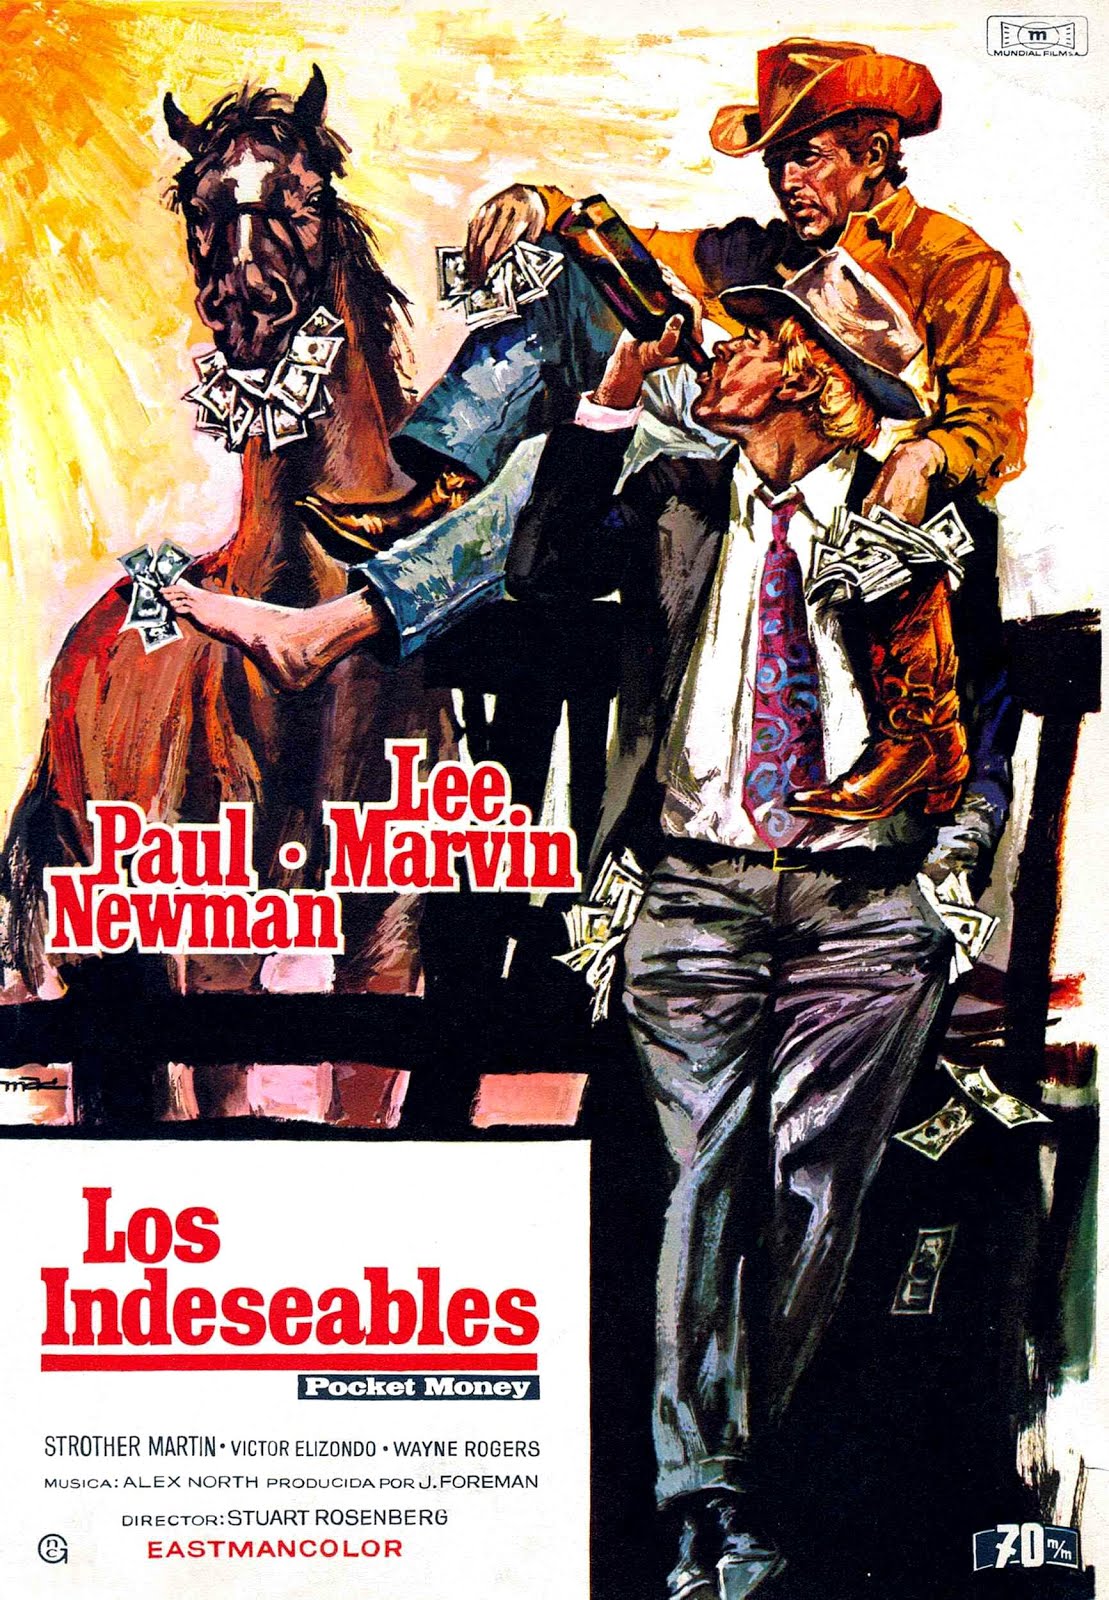 Les indésirables (1971) Stuart Rosenberg - Pocket money (26.04.1971 / 1971)